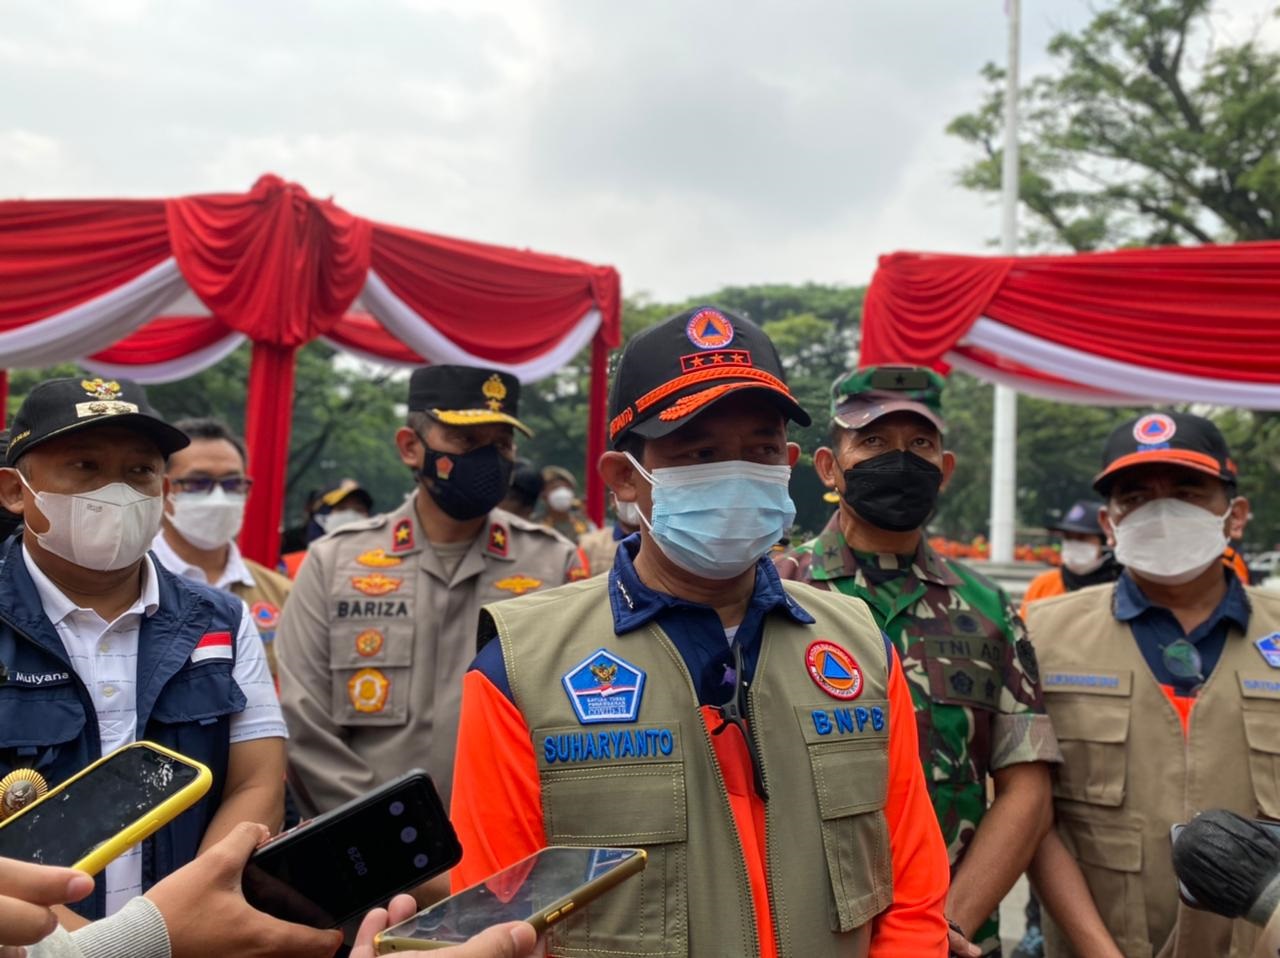 Ketua BNPB Pusat, Letnan TNI Suharyanto saat melakukan upacara simbolis pembagian masker secara gratis di Kota Bandung. Sabtu (19/2). Foto. Sandi Nugraha